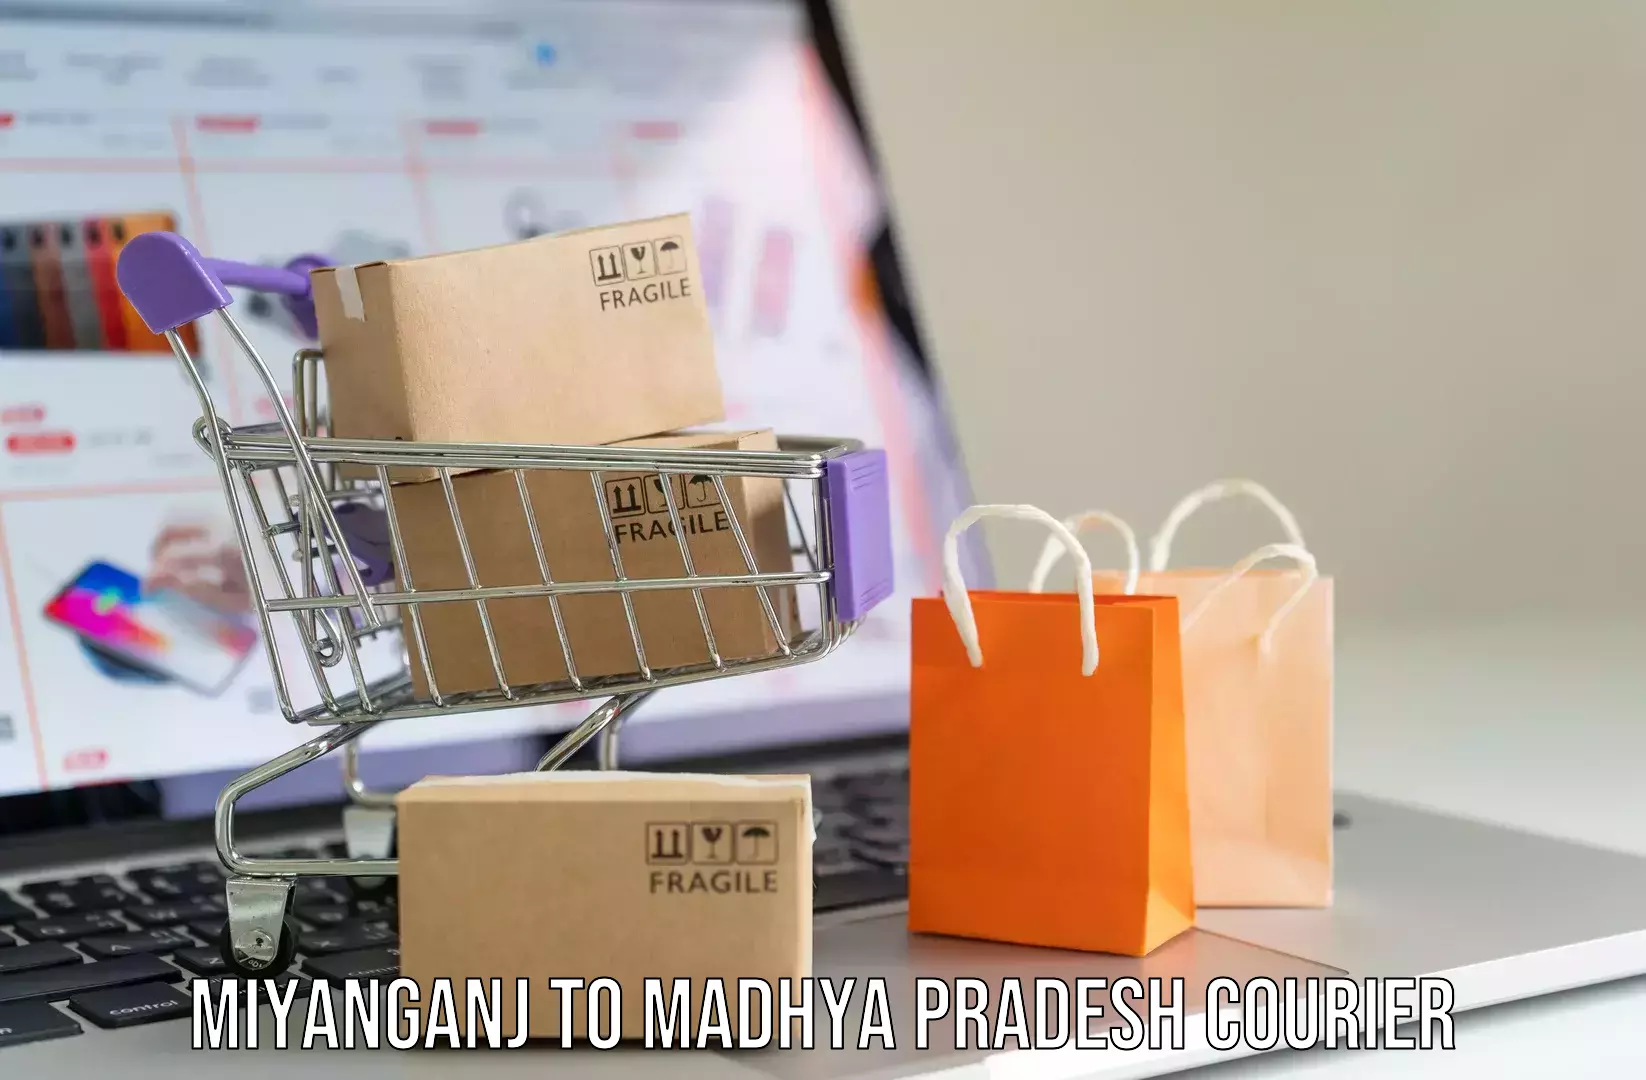 Luggage shipping guide Miyanganj to Khandwa